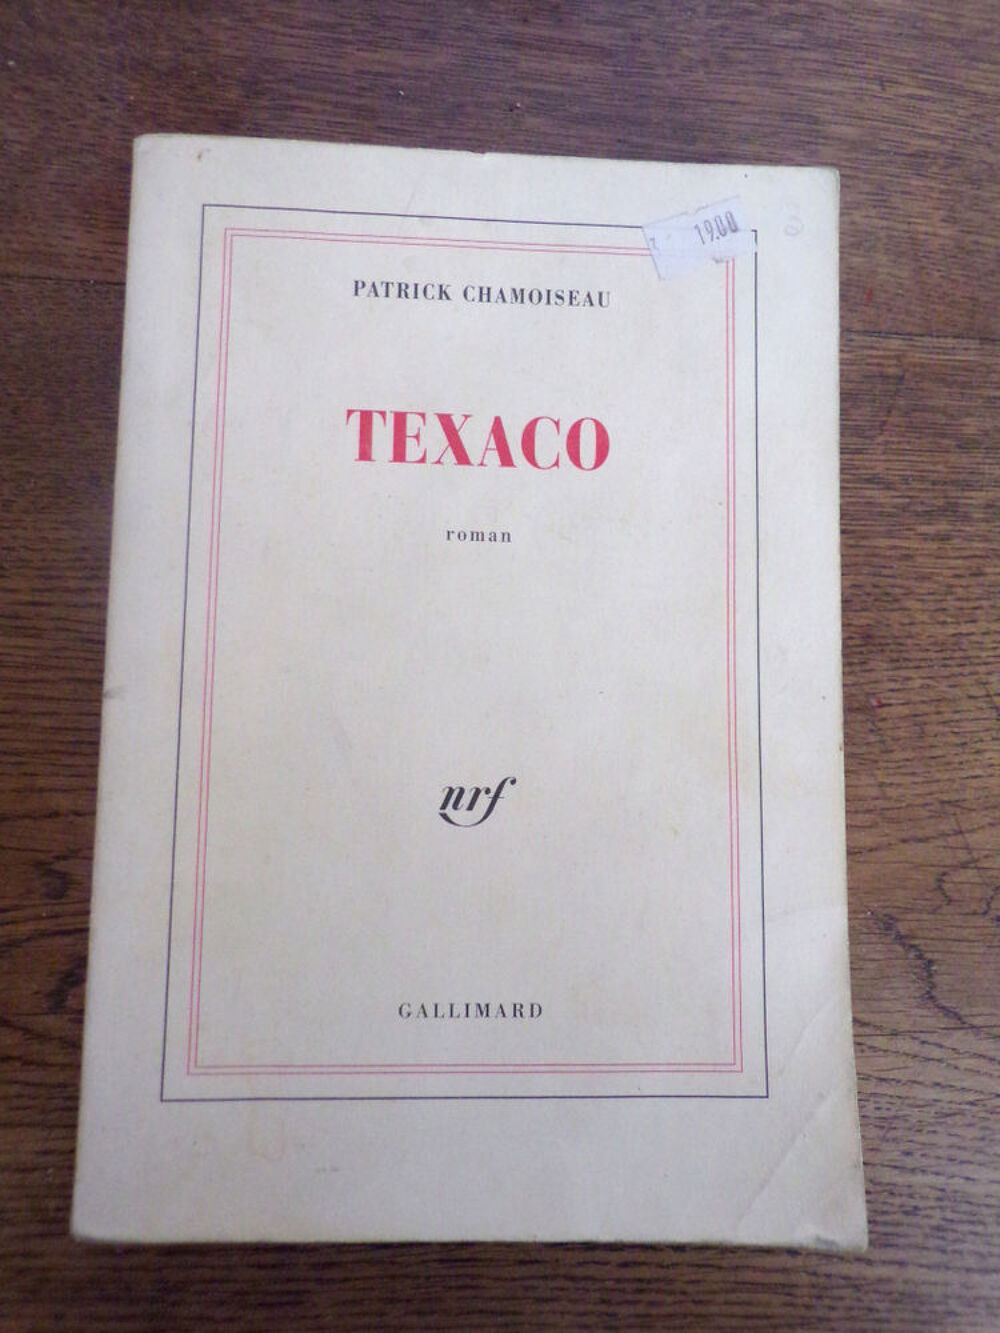 Texaco Patrick Chamoiseau &eacute;dition Gallimard nrf roman 1992 Livres et BD